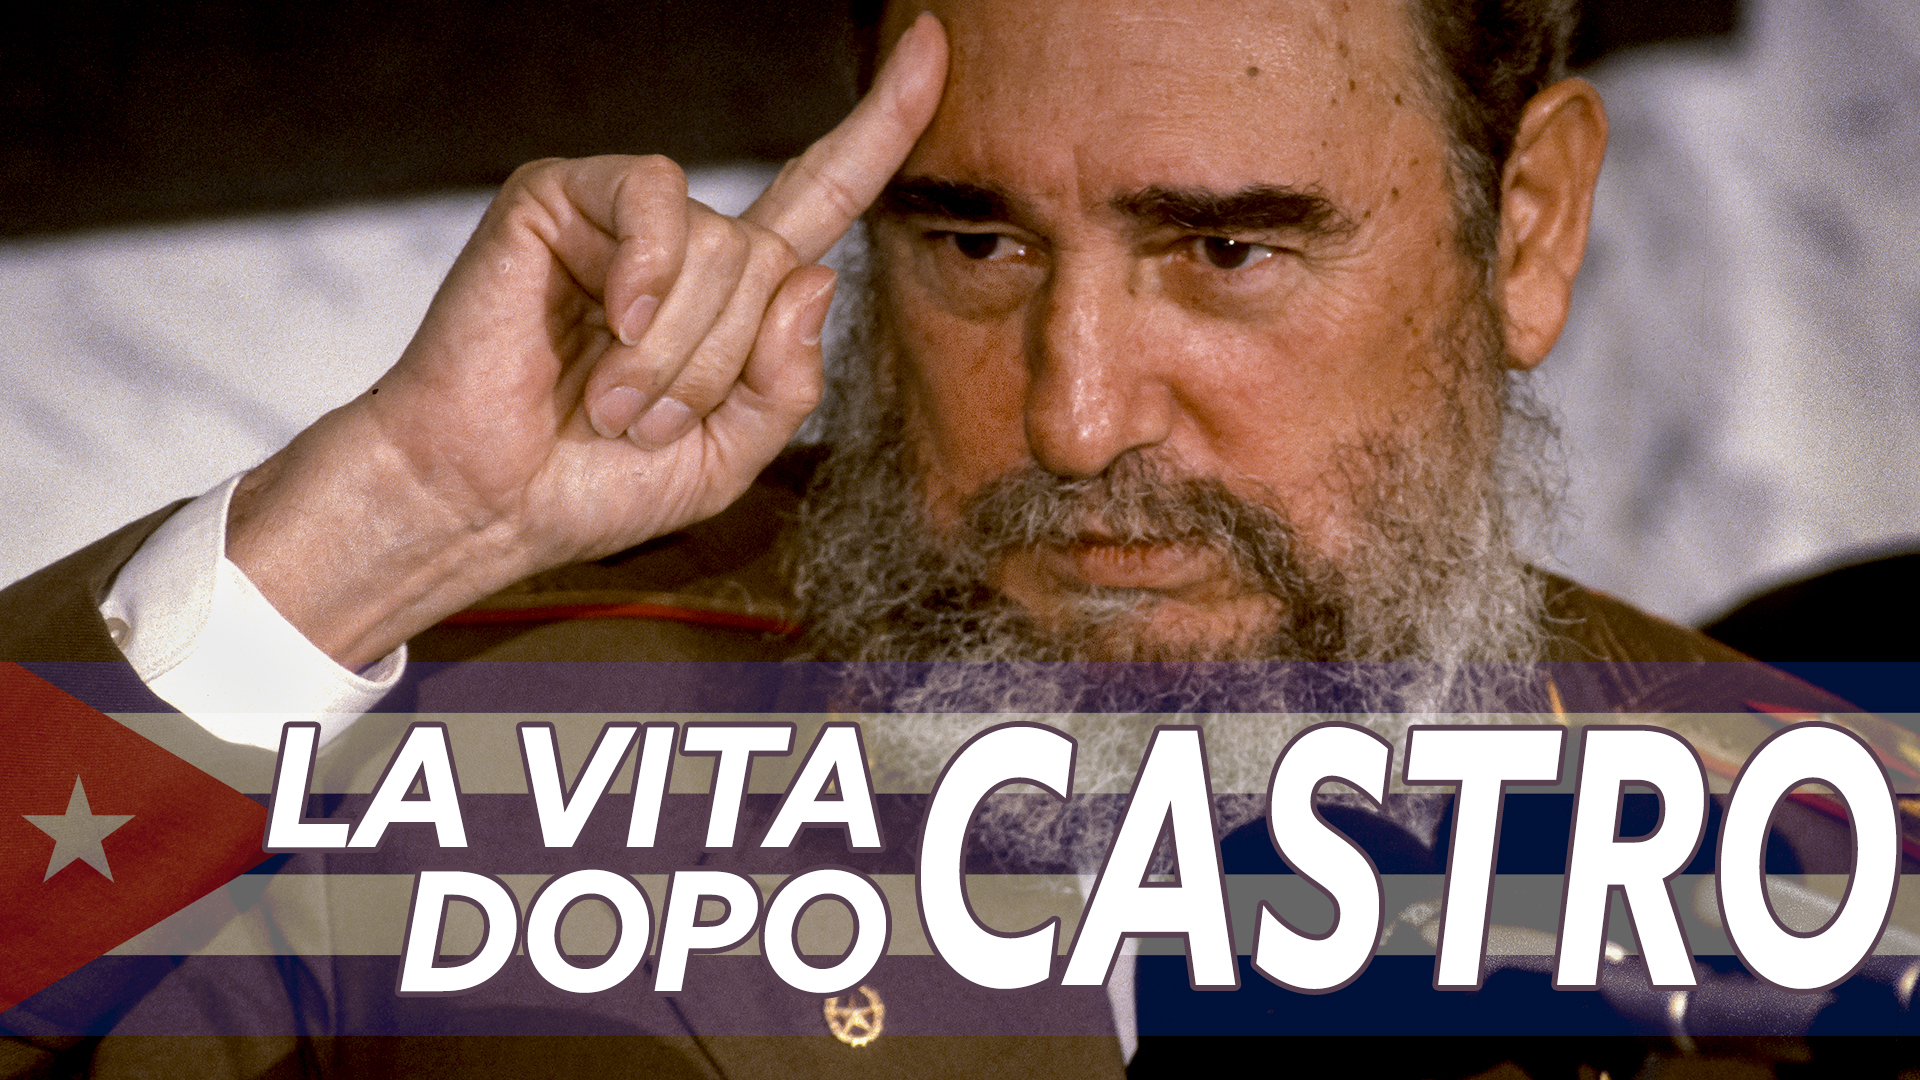 Dopo Castro cosa succedera' in Sud America?